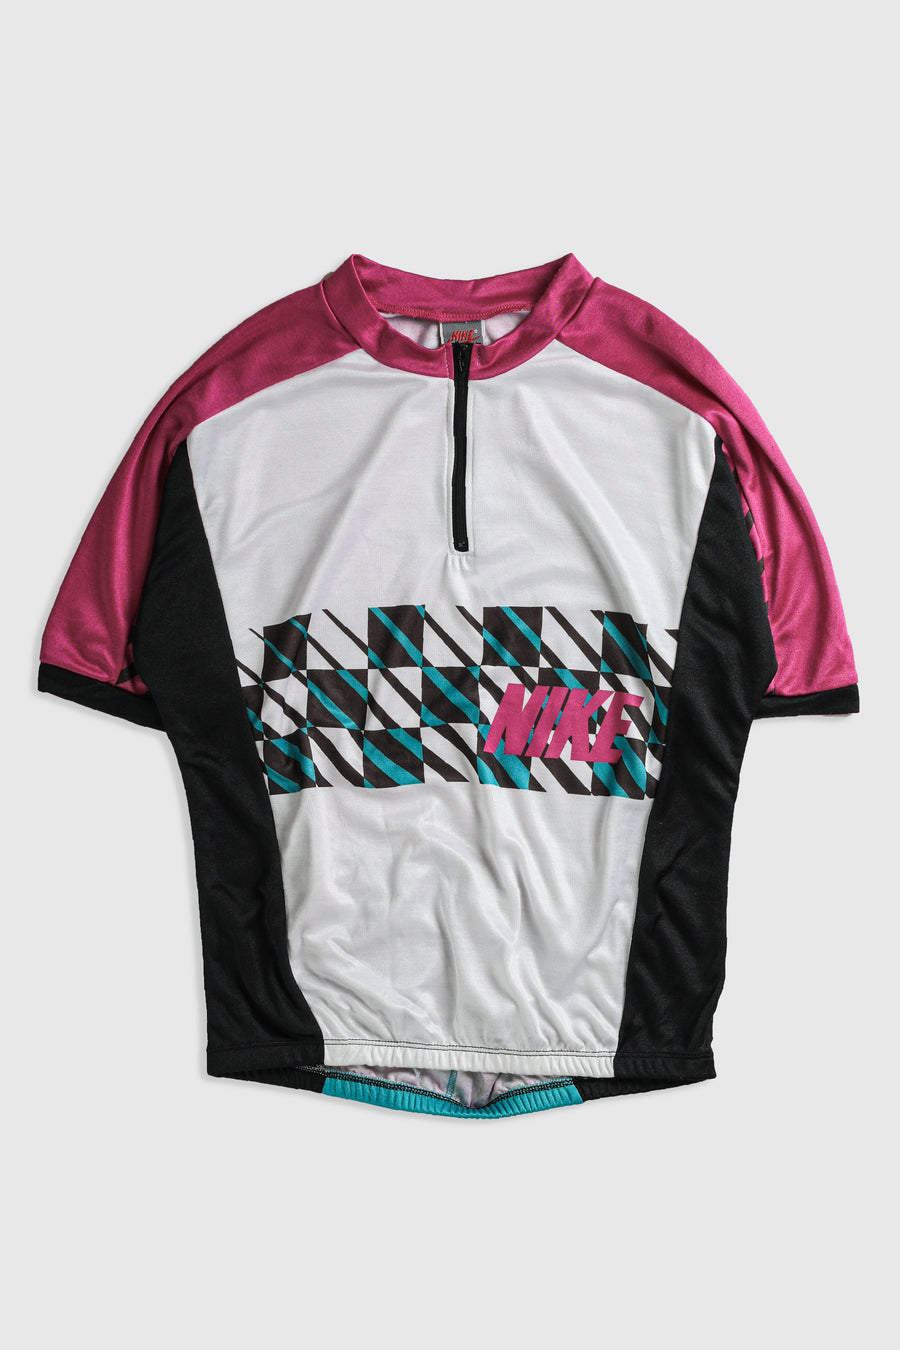 Nike Cycling Jersey